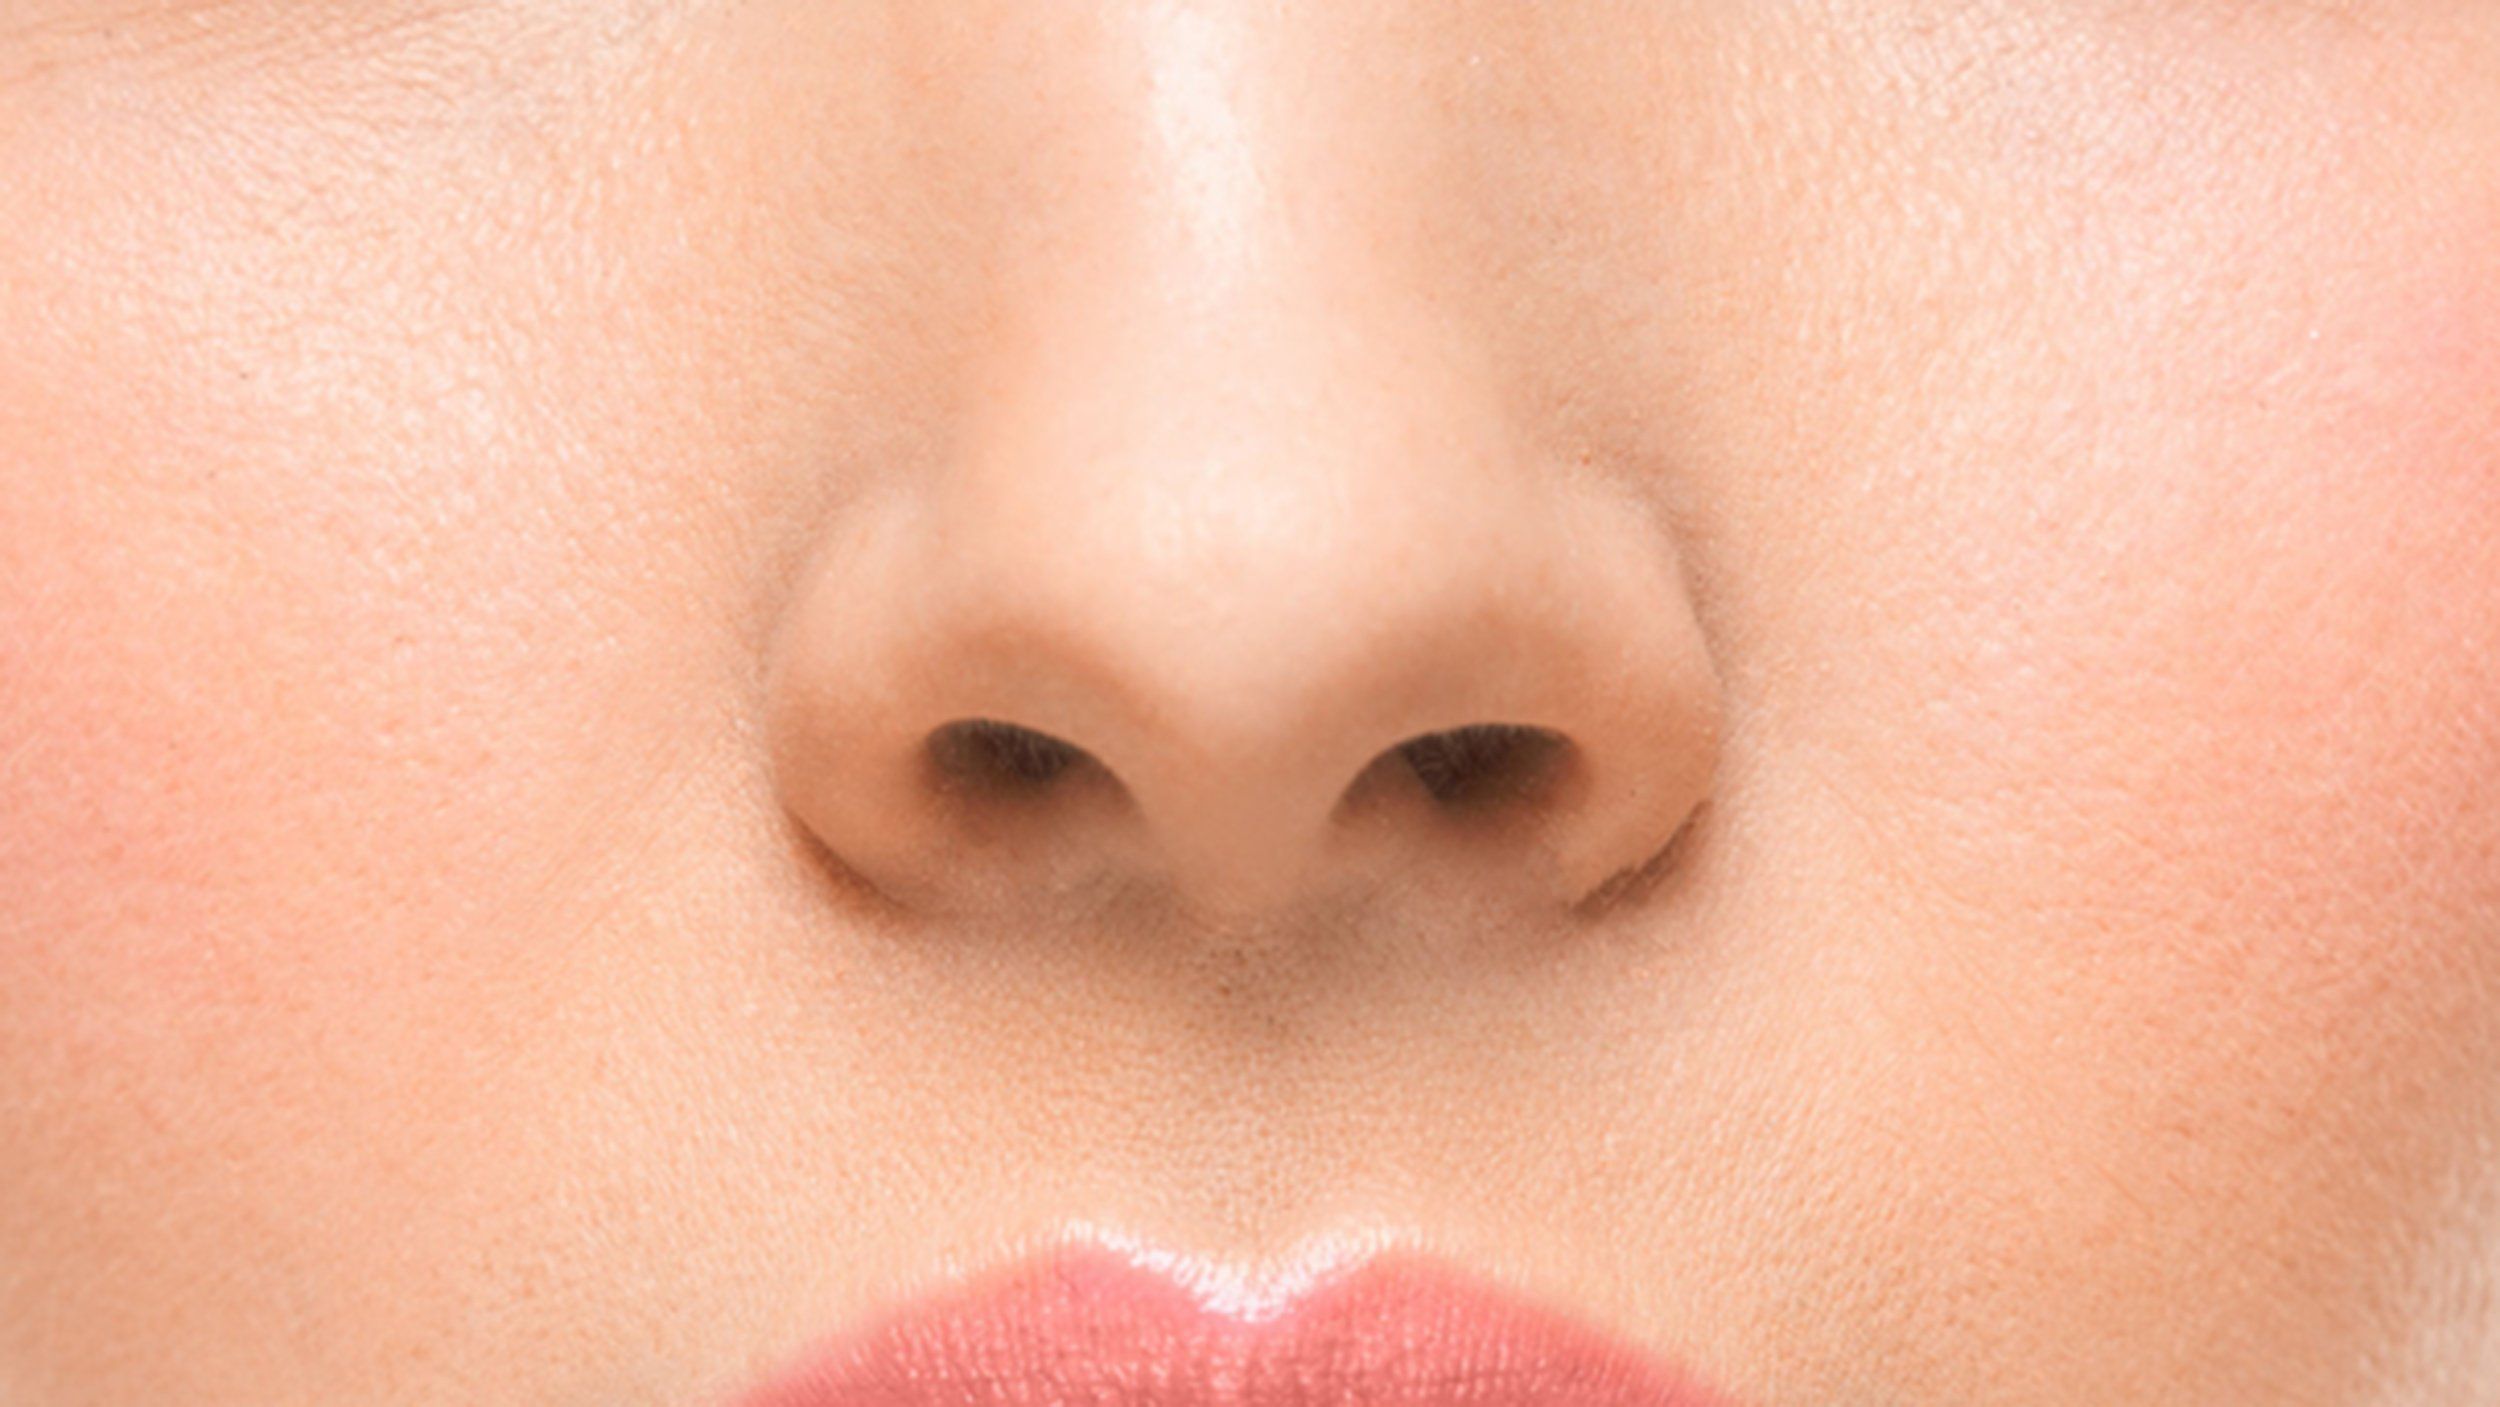 Факт о человеческом носе